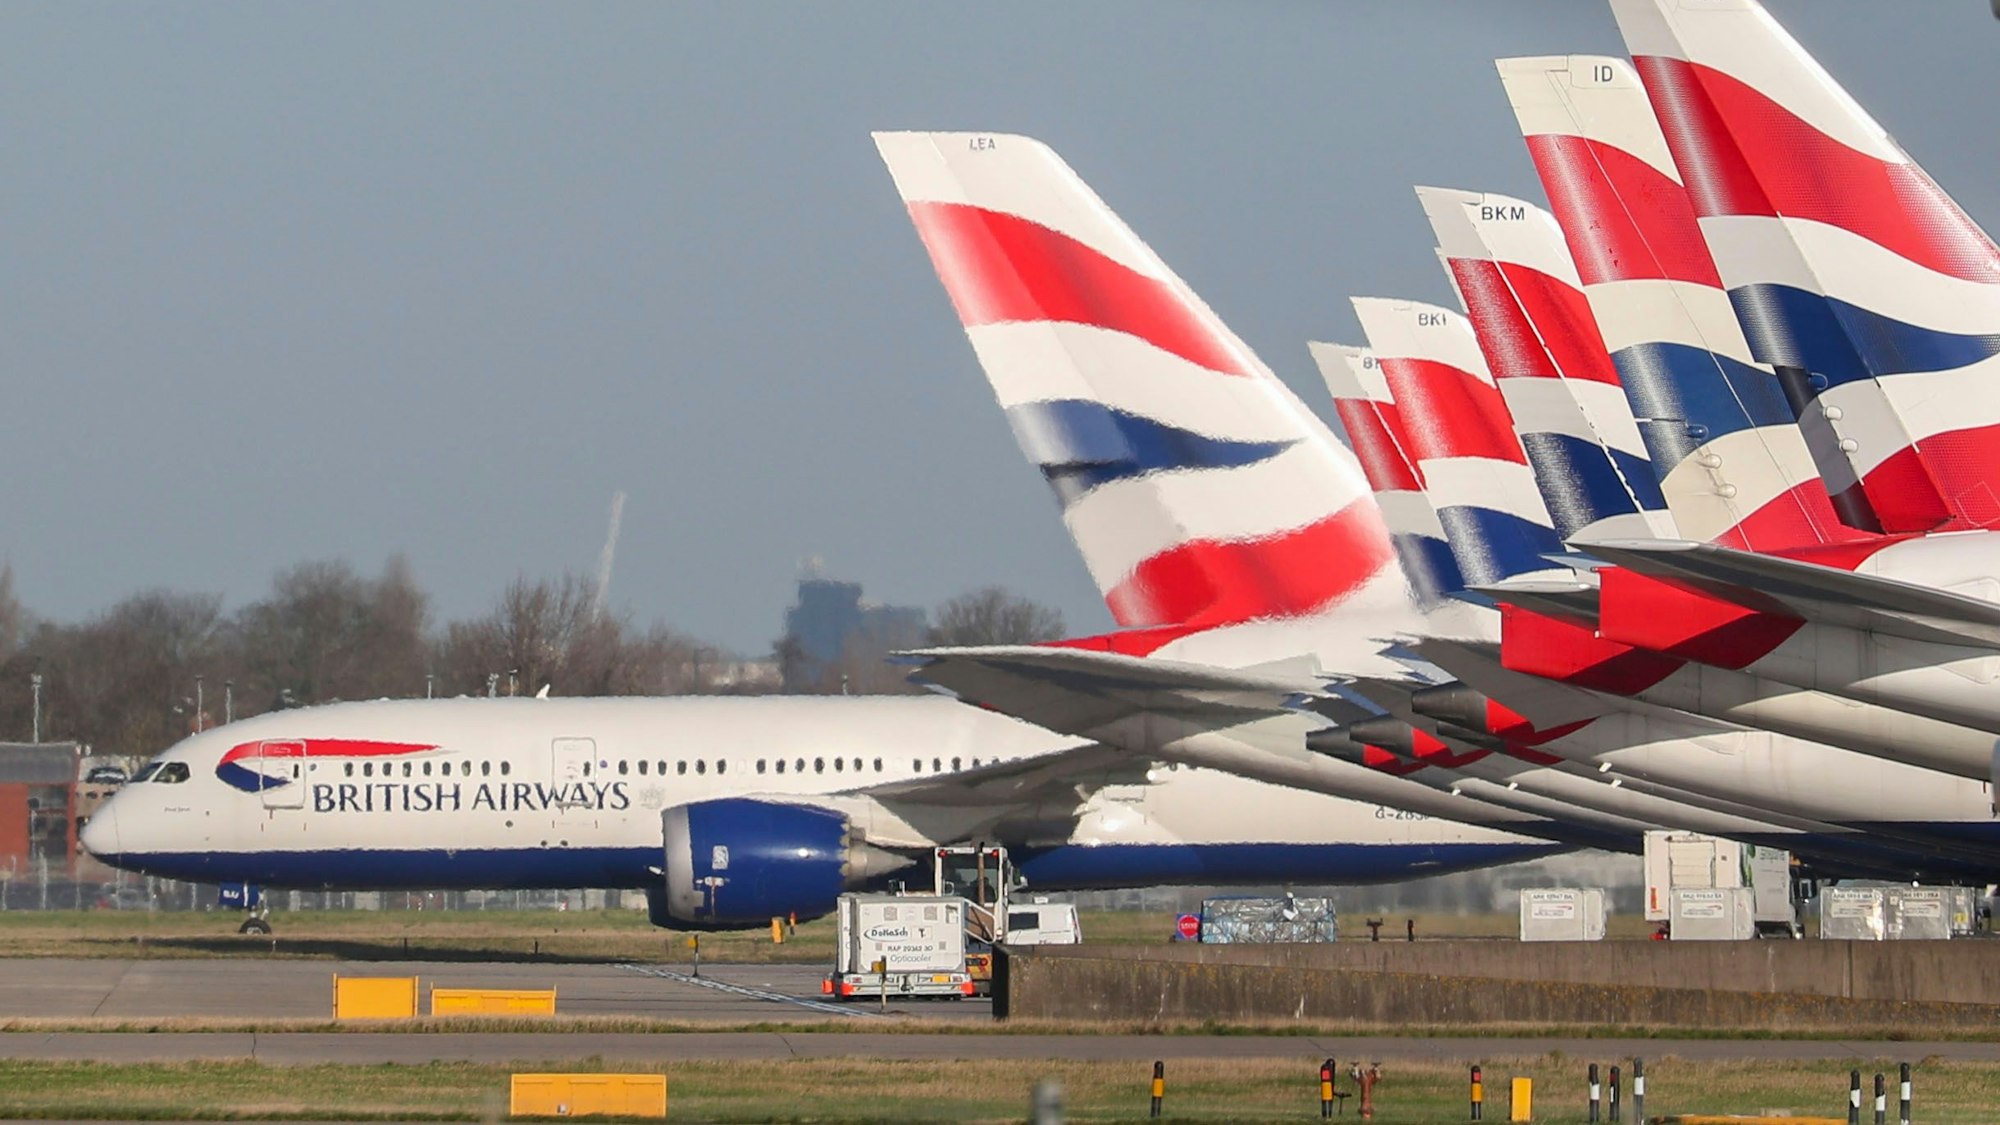 29.01.2020, Großbritannien, Heathrow: Flugzeuge von British Airways stehen auf dem Flughafen London Heathrow.